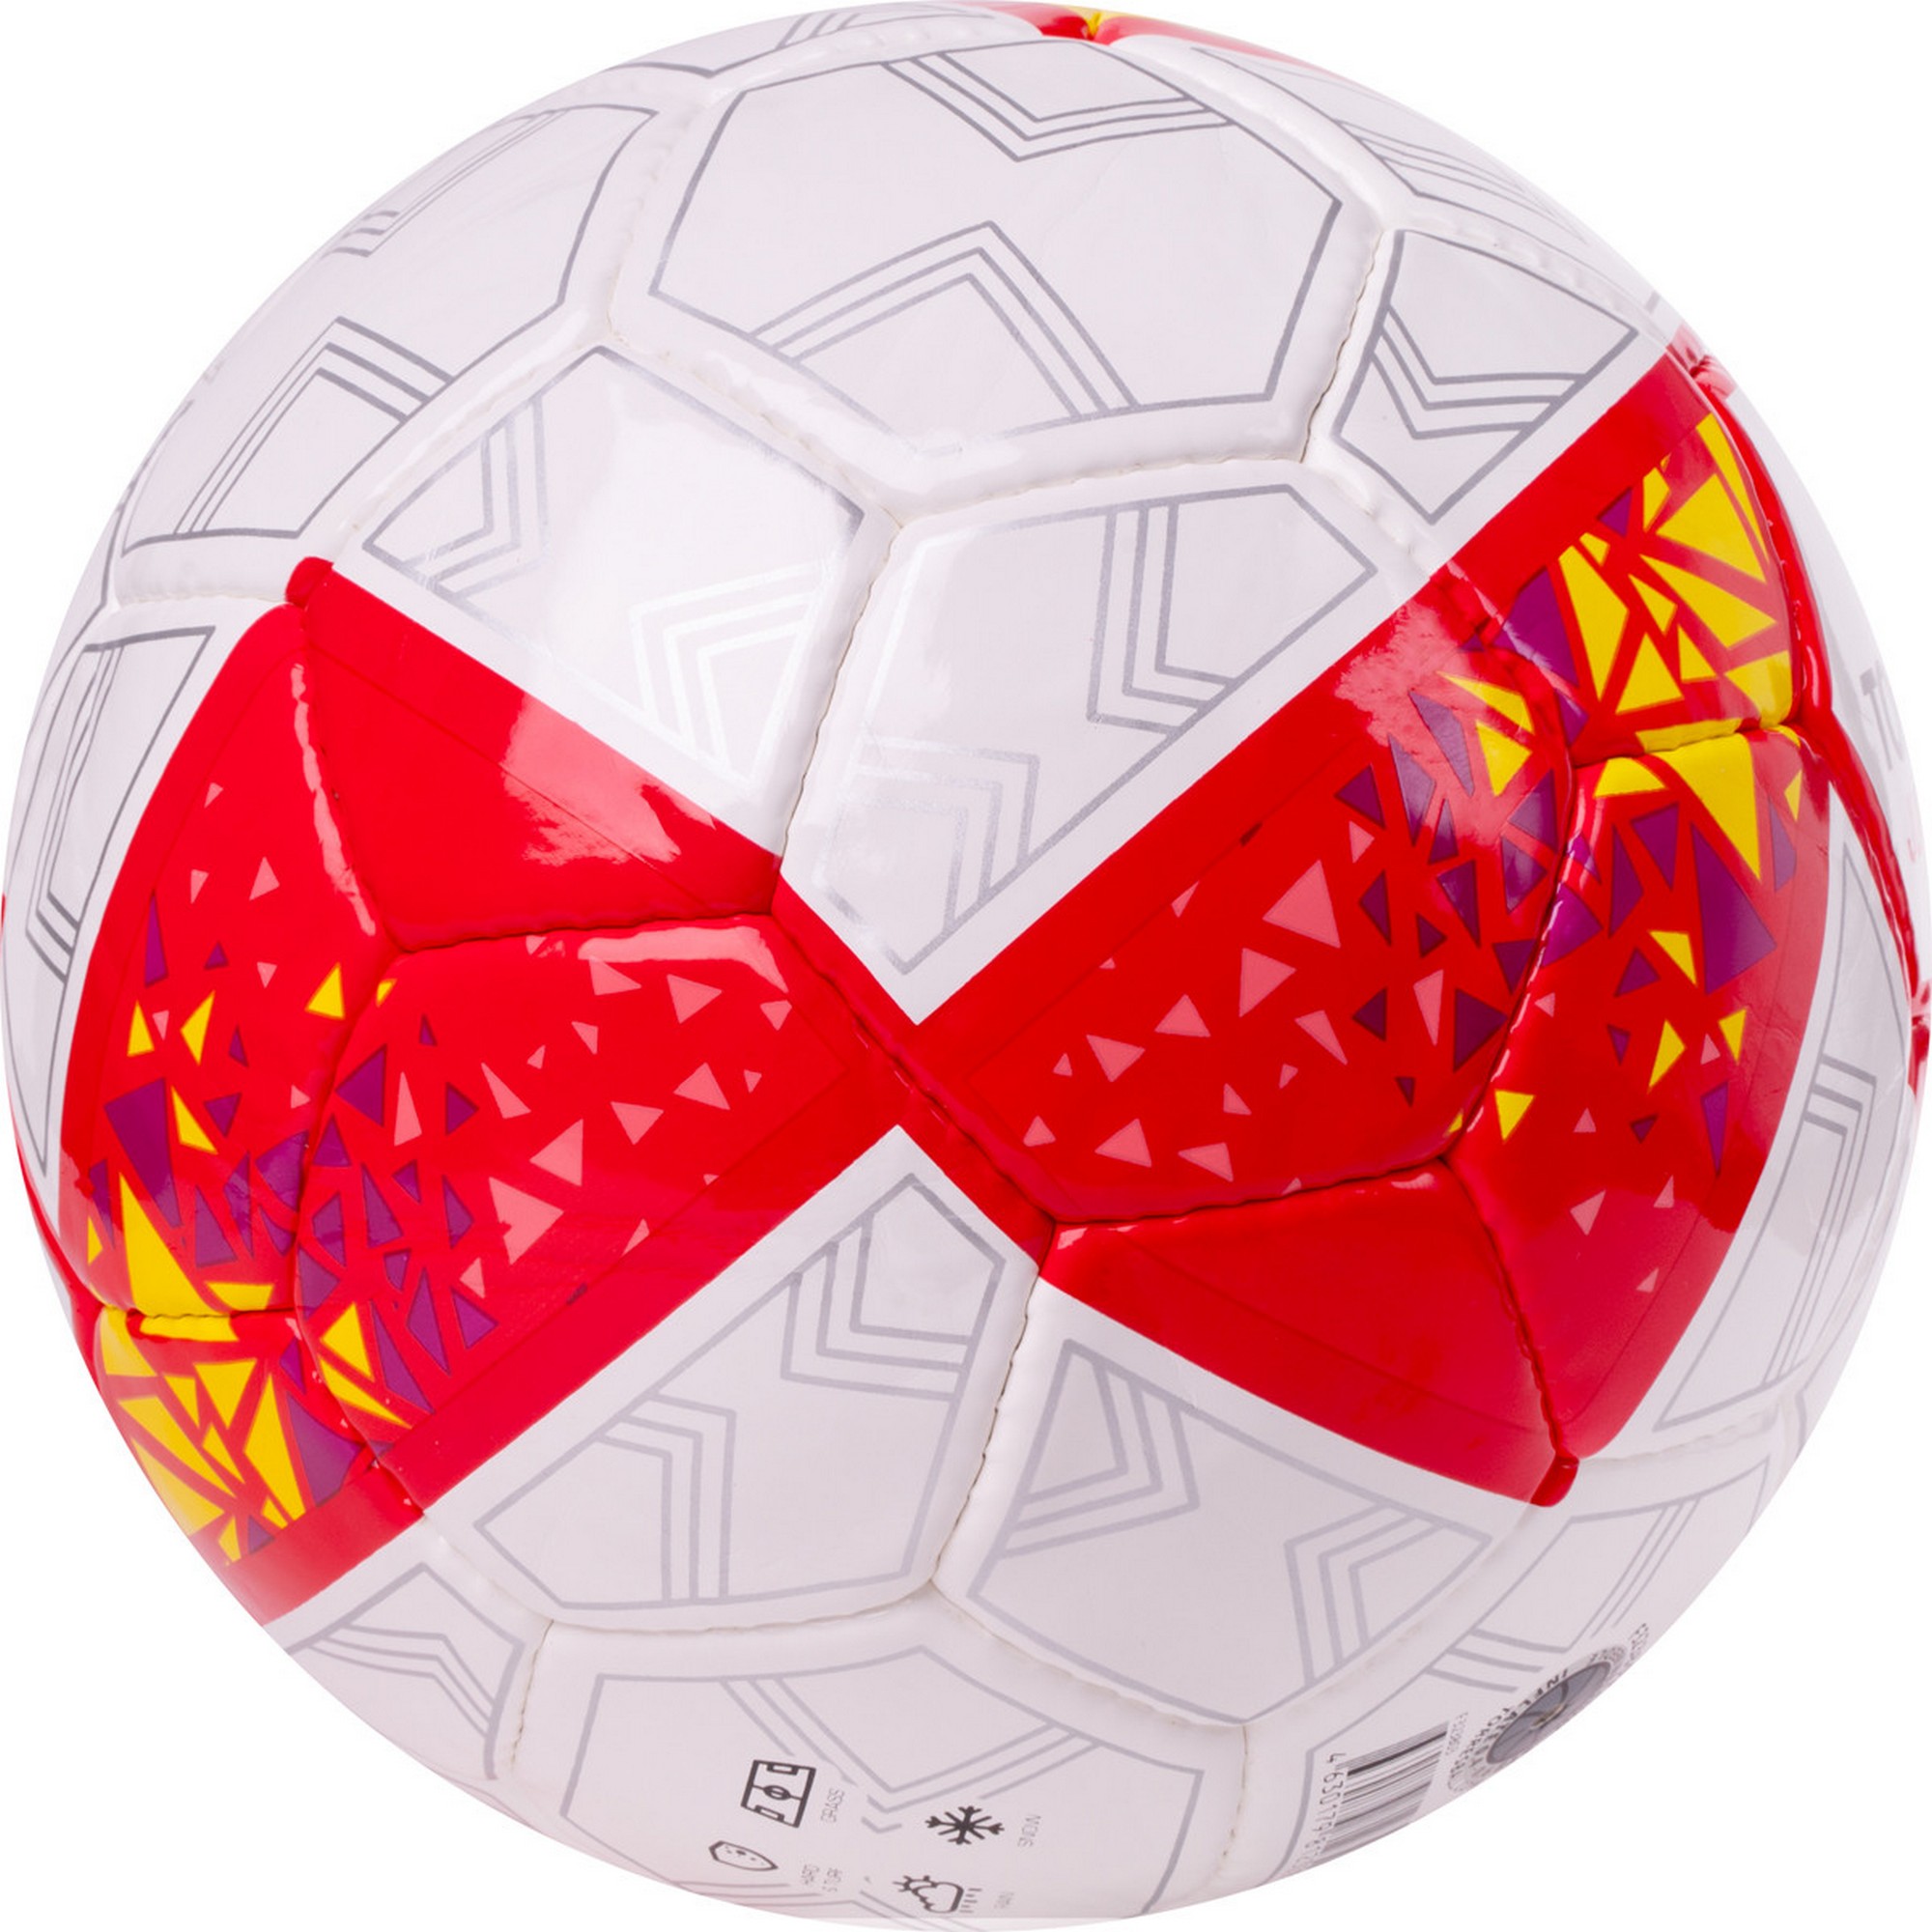 Мяч футбольный Torres Junior-3 F323803 р.3 2000_2000